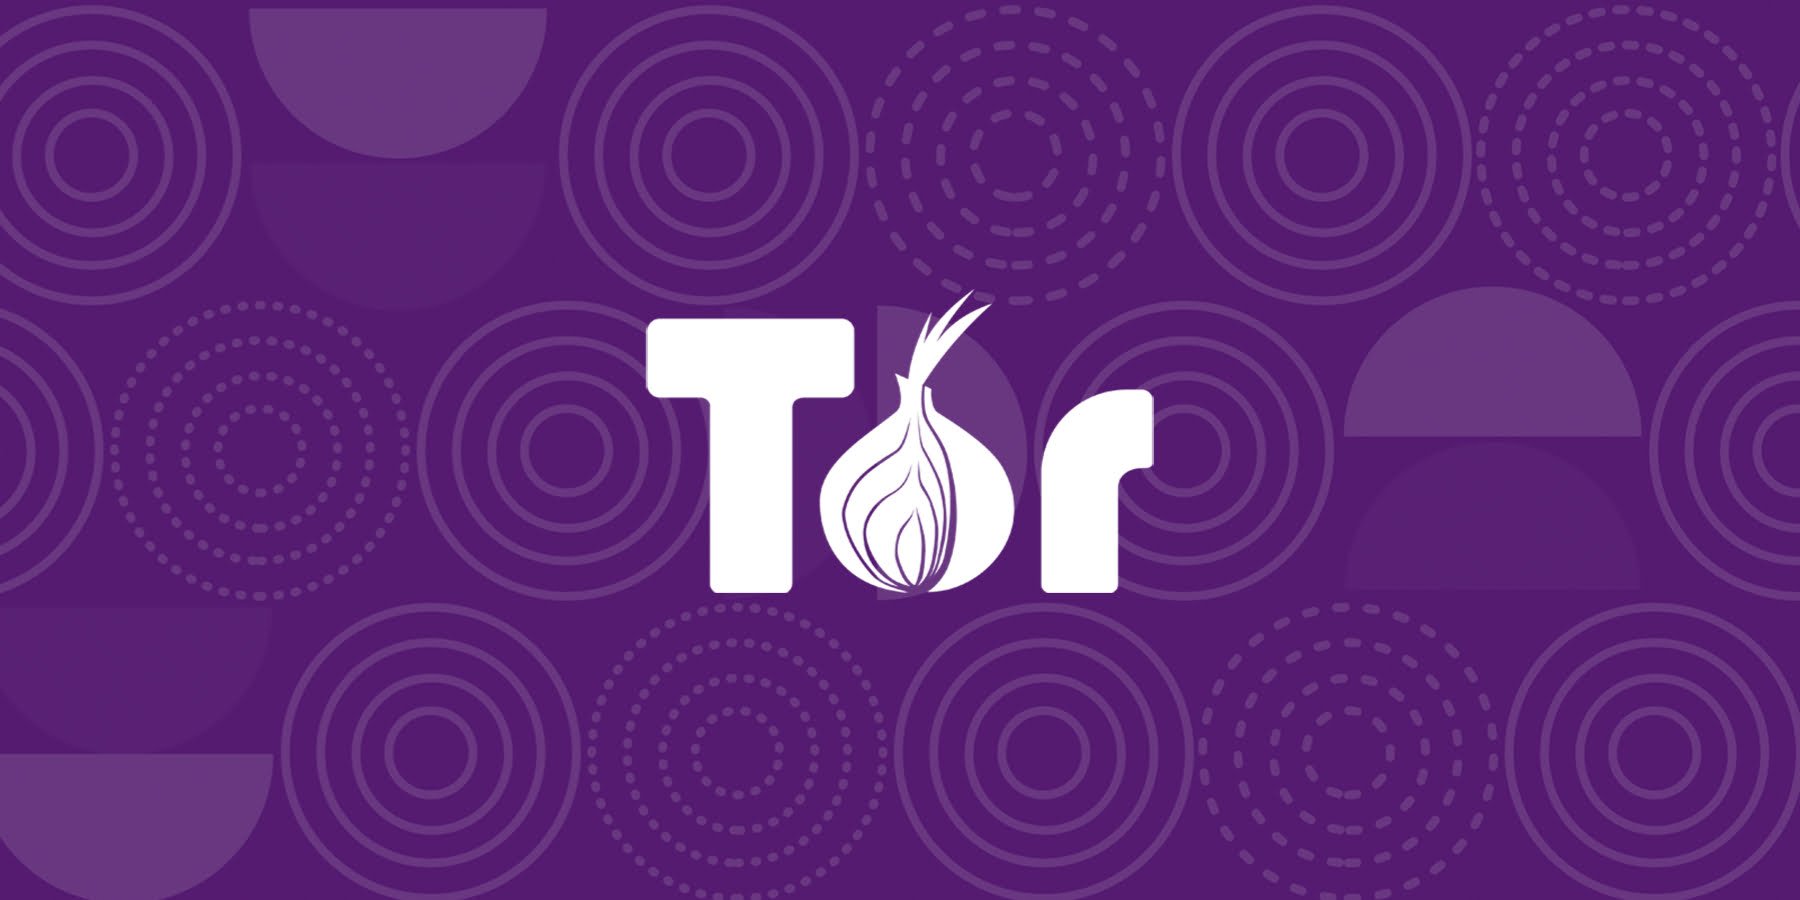 Sieć Tor zakazana w Rosji